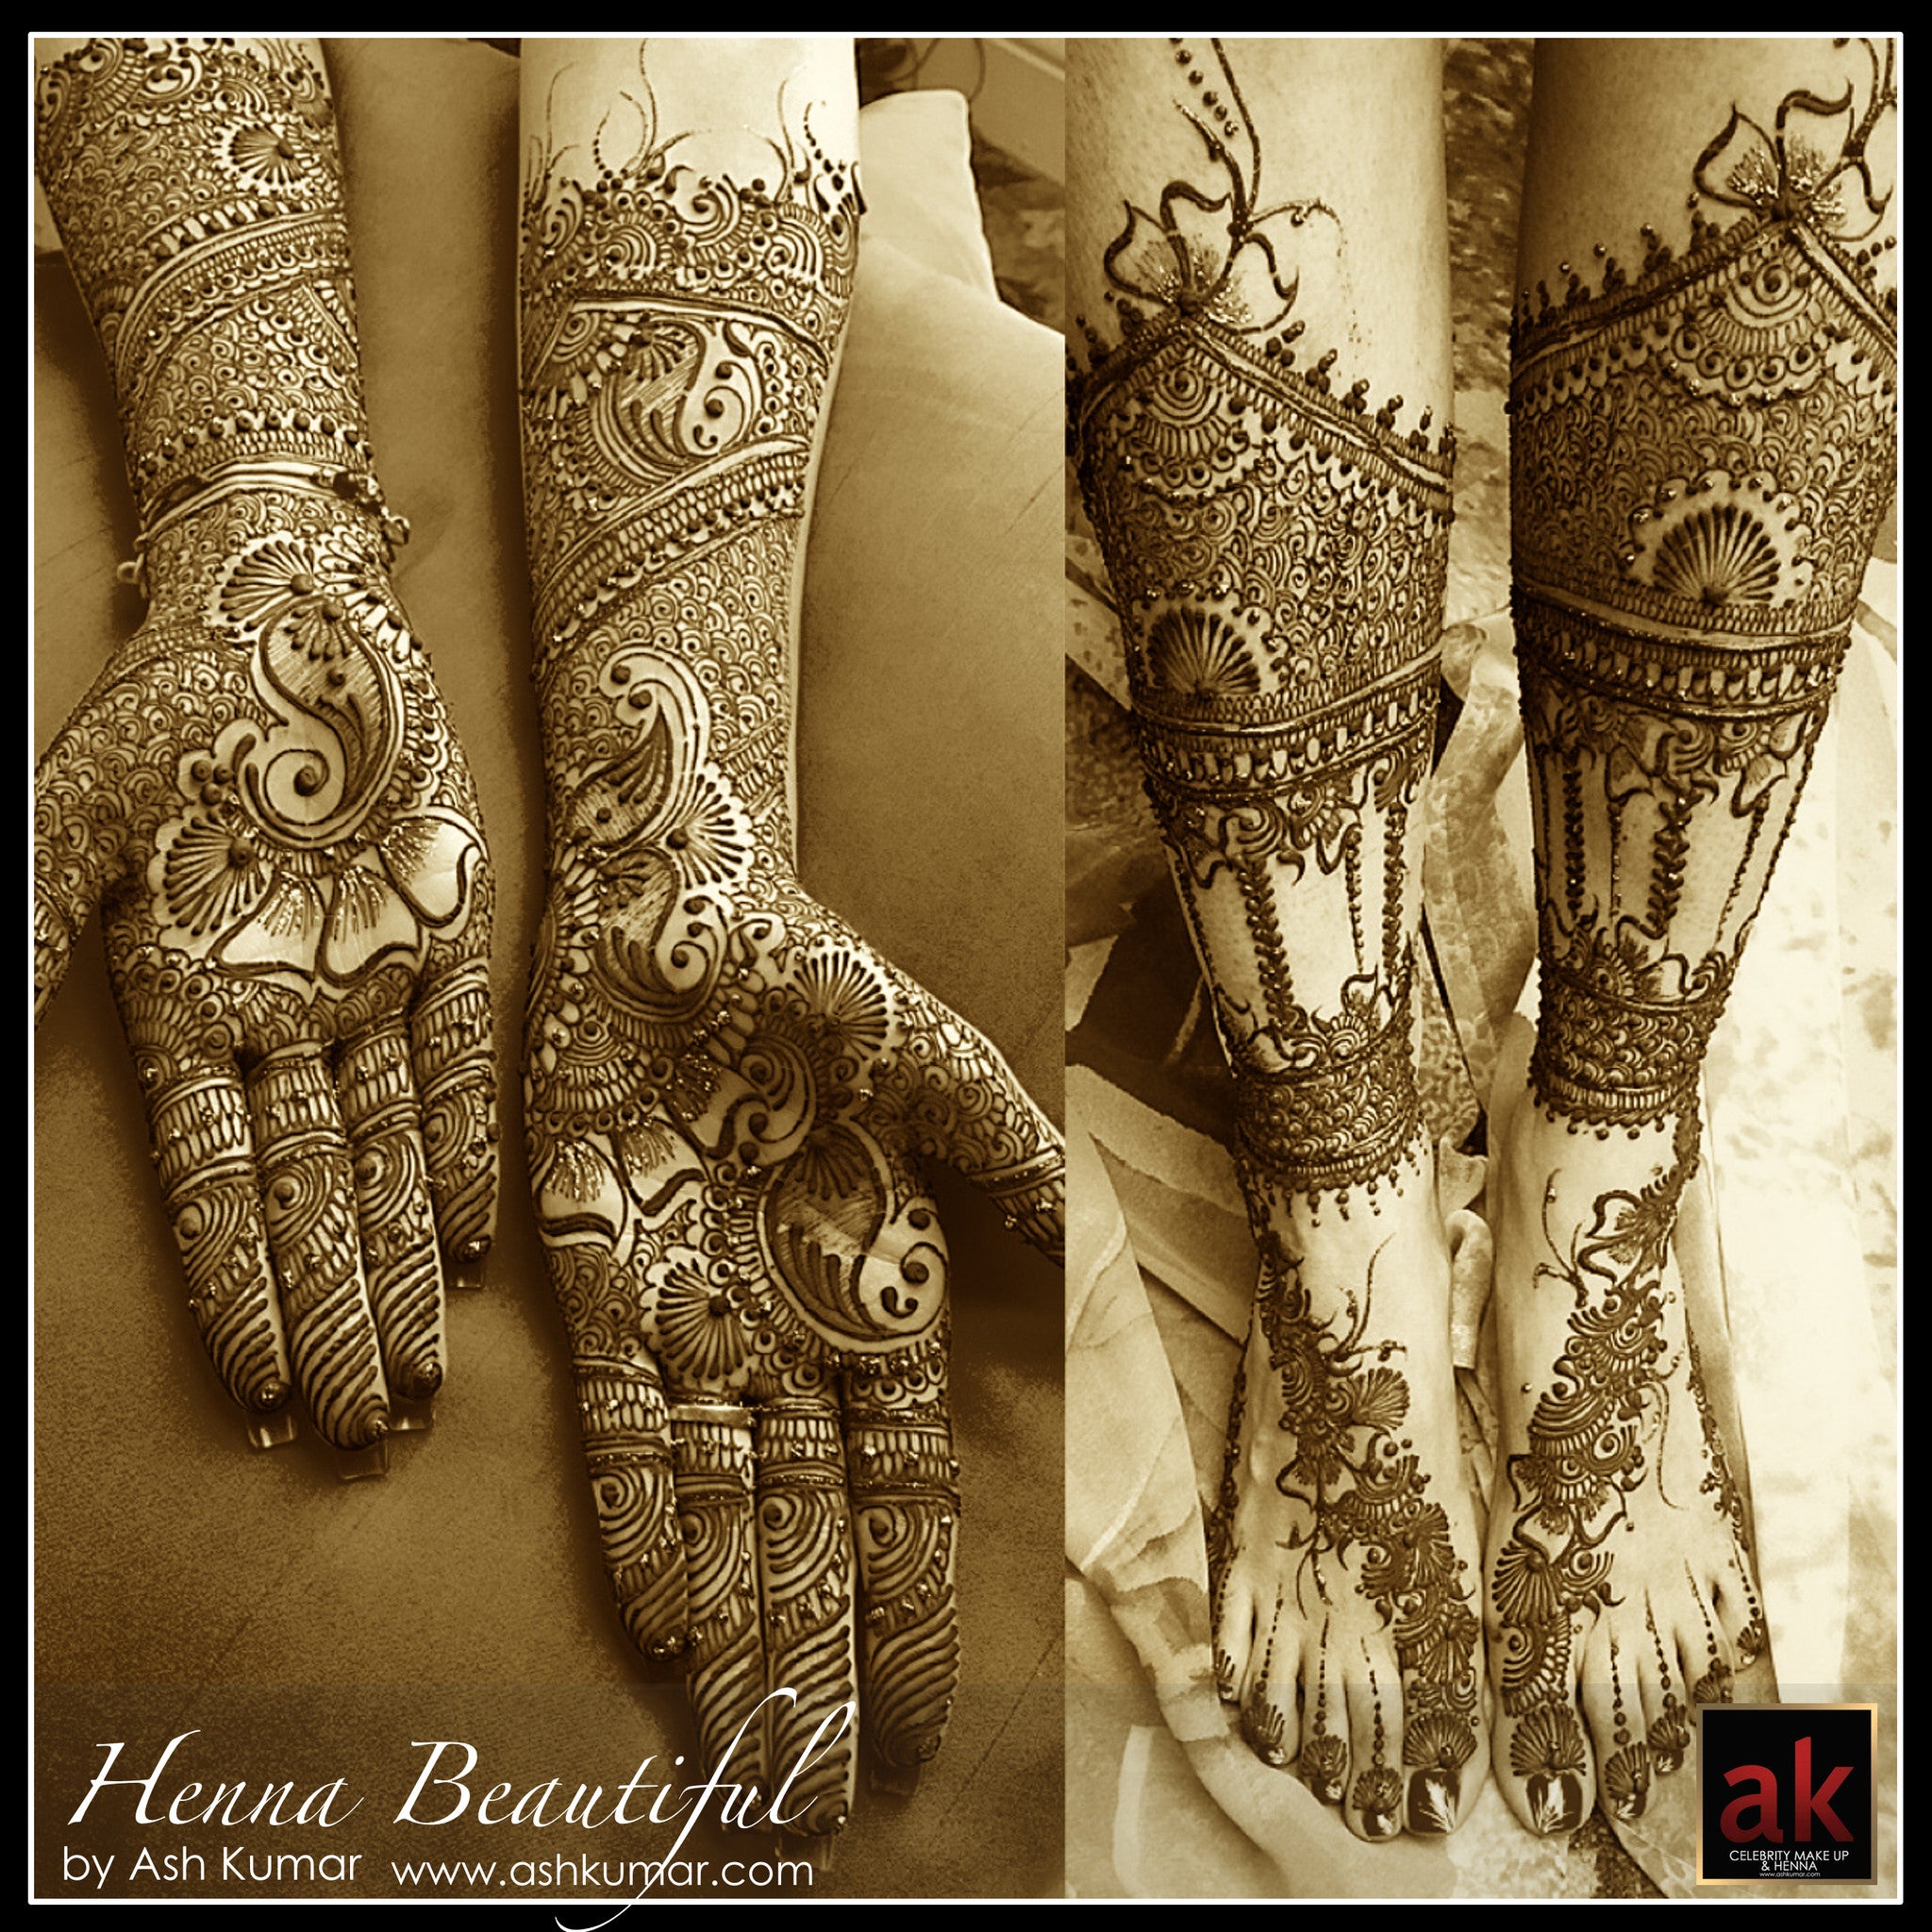 HENNA BEAUTIFUL BY ASH KUMAR